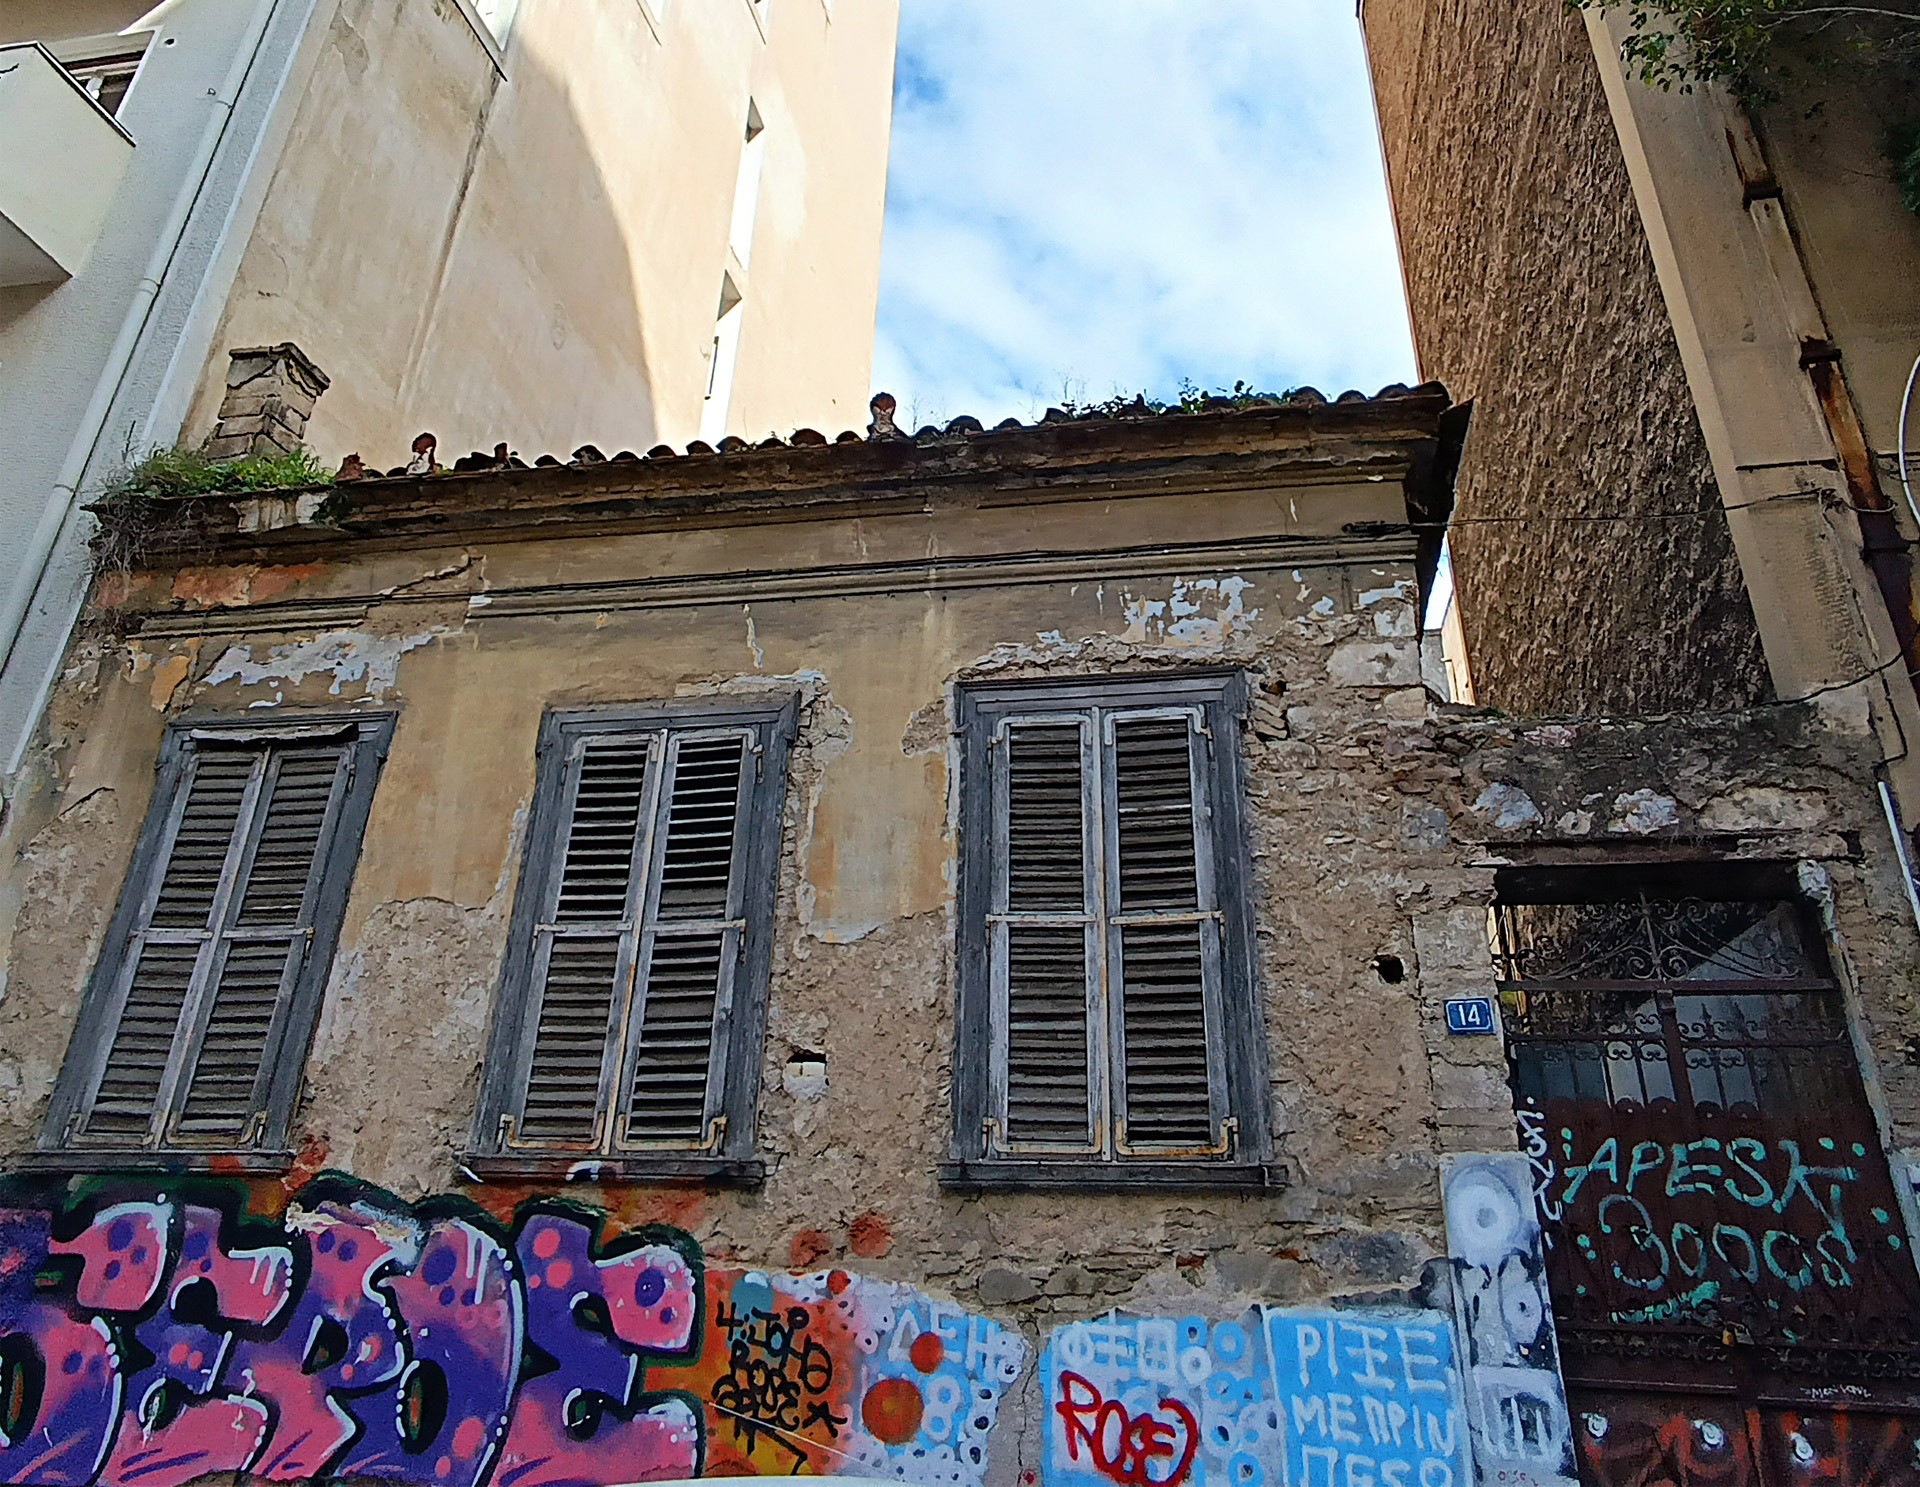 Νεάπολη, Οδός Ερεσσού 14. Ένα εγκαταλελειμμένο μονώροφο σπιτάκι των αρχών του περασμένου αιώνα ασφυκτιά ανάμεσα στις ψηλές πολυκατοικίες